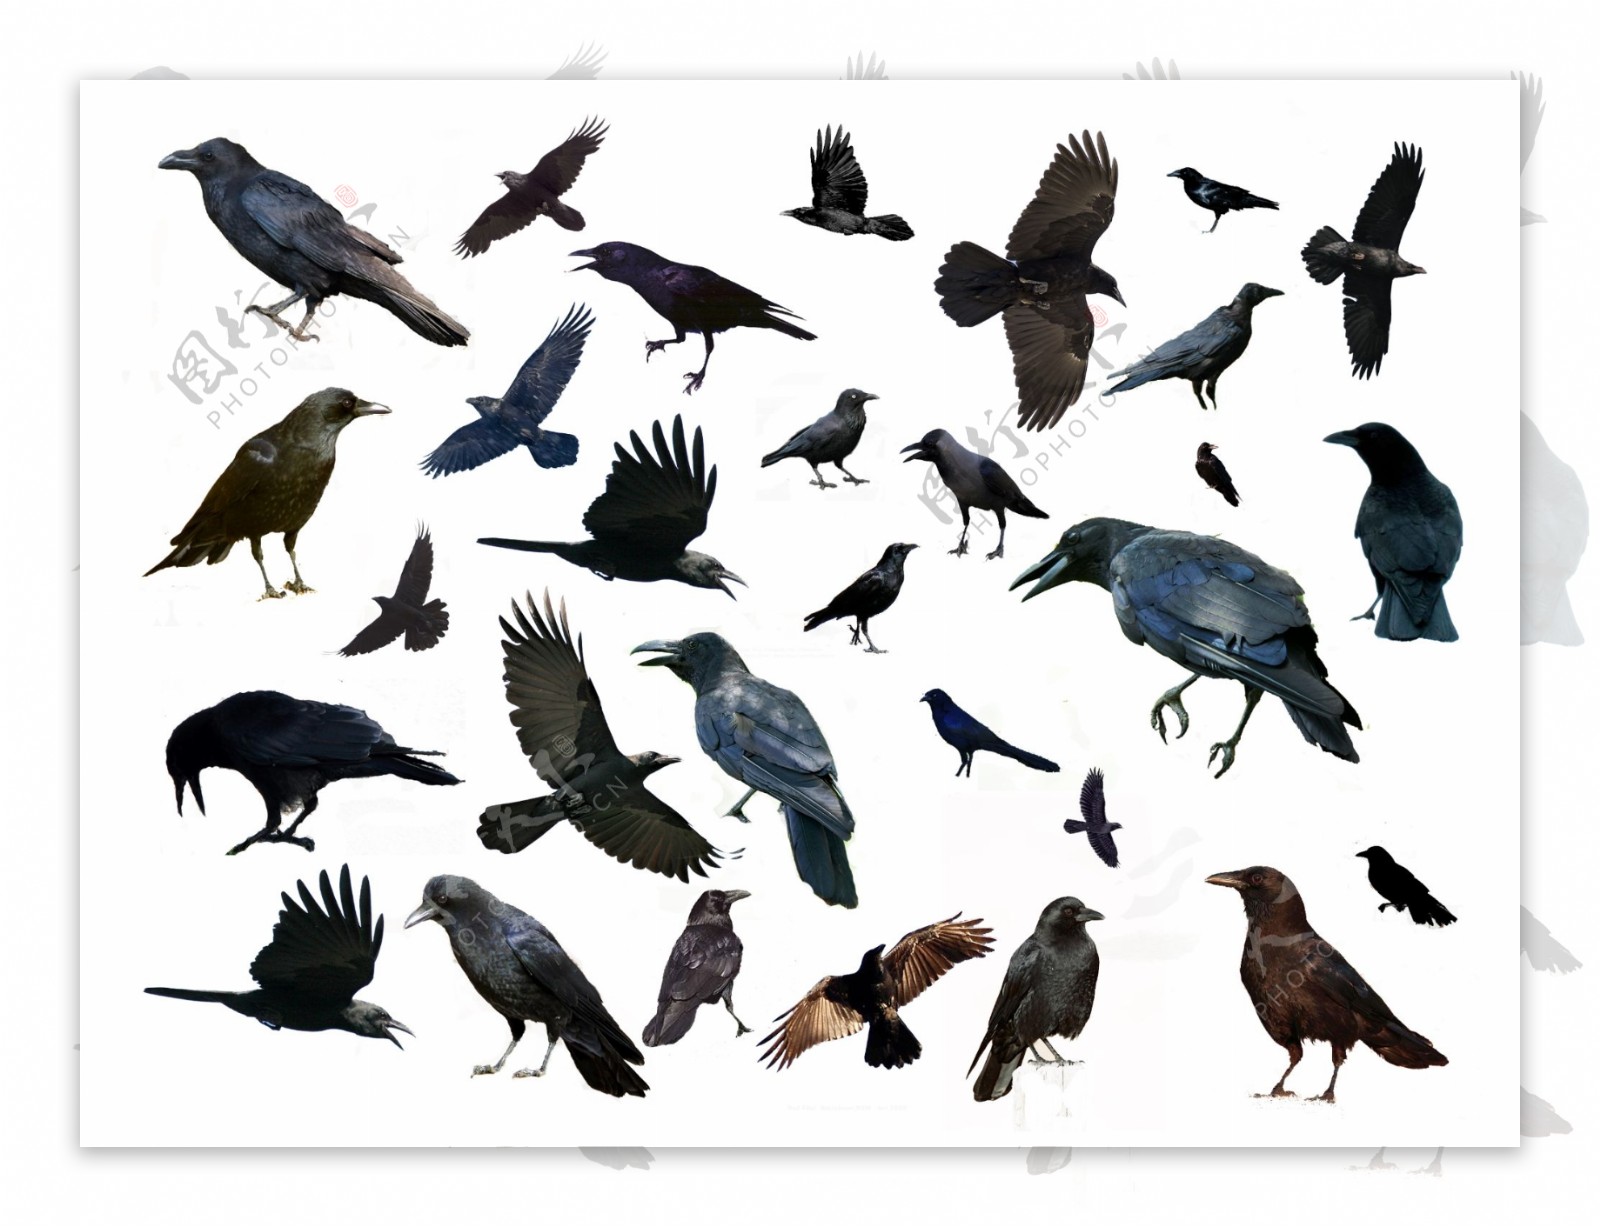 多种鸟分层